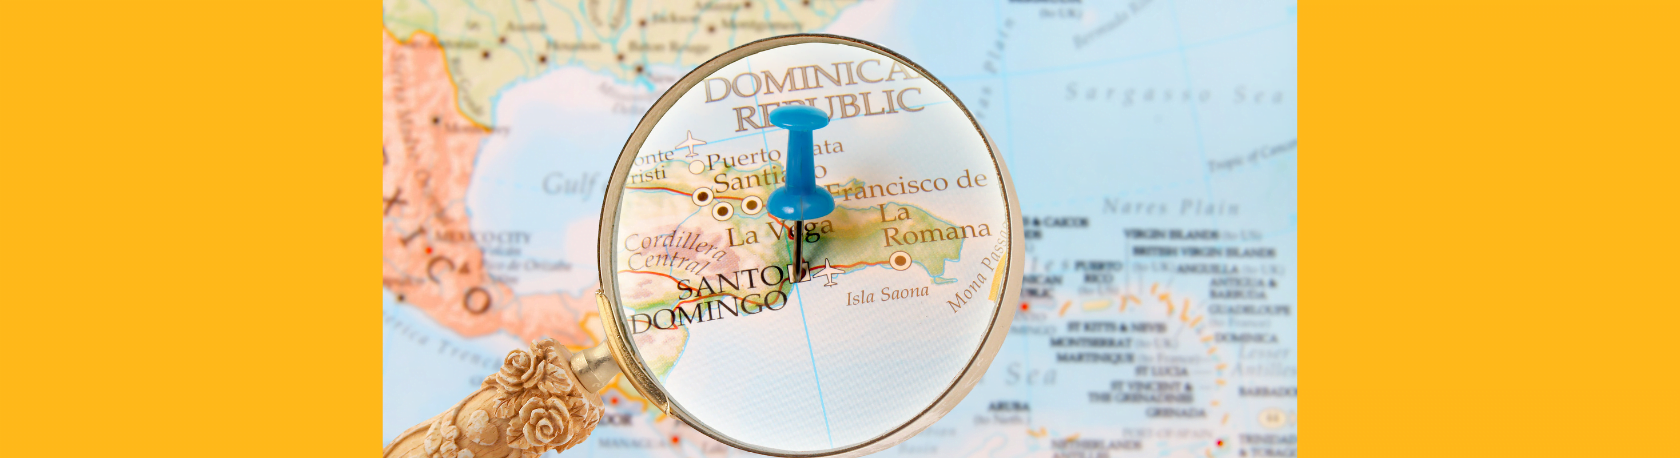 ¿Sabías que Santo Domingo fue la primera ciudad que los europeos fundaron en las Américas? - Easy Español